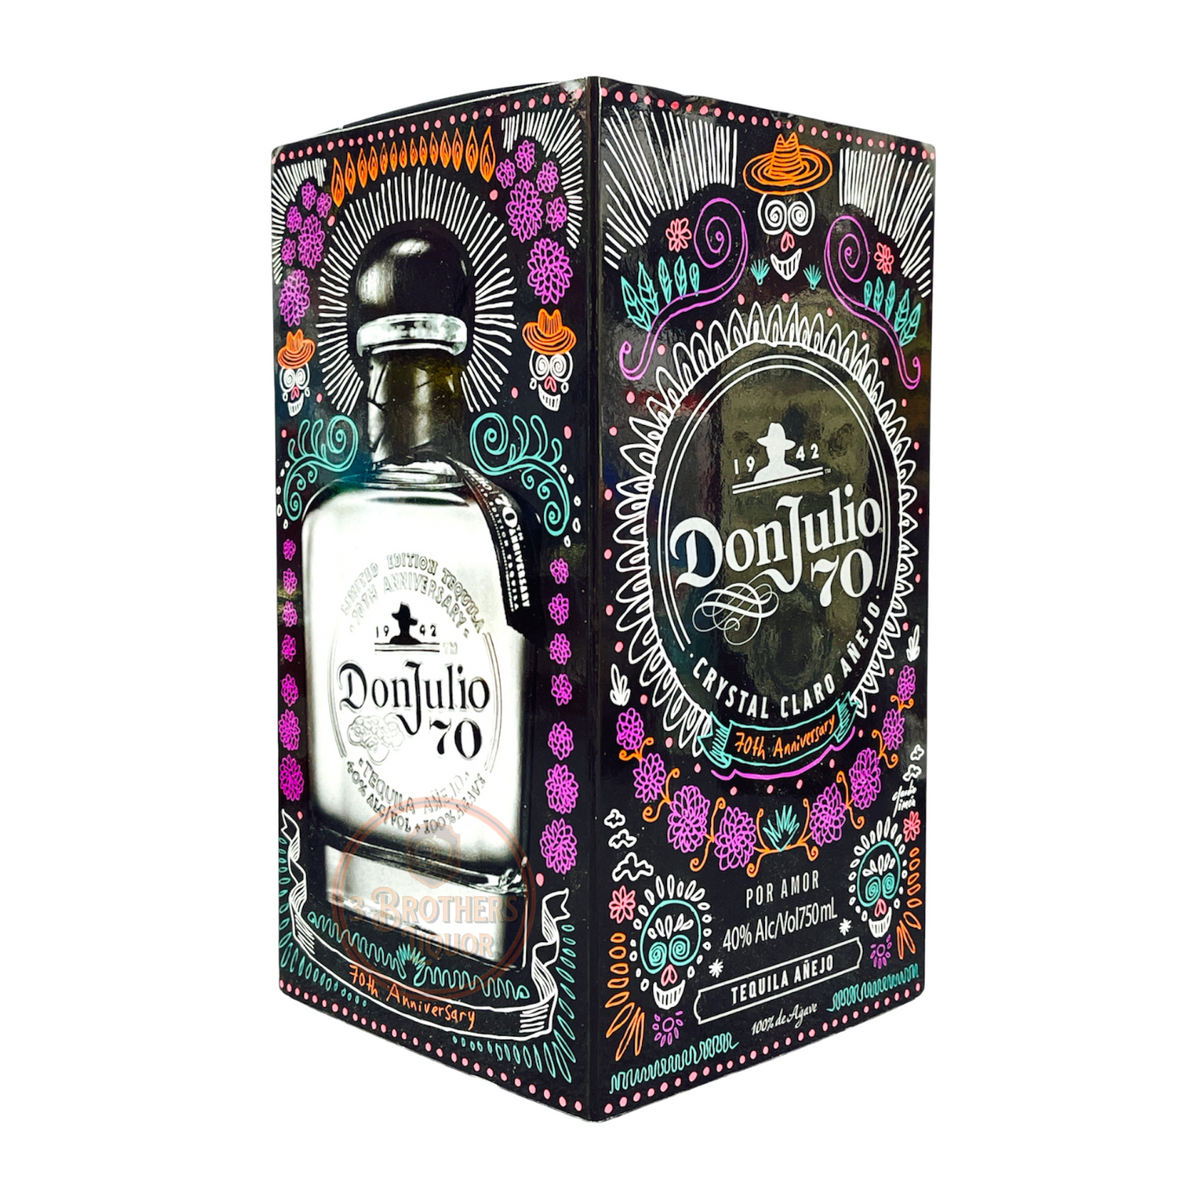 Don Julio 70 Anejo Tequila De Lo Muertos Limited Edition Box